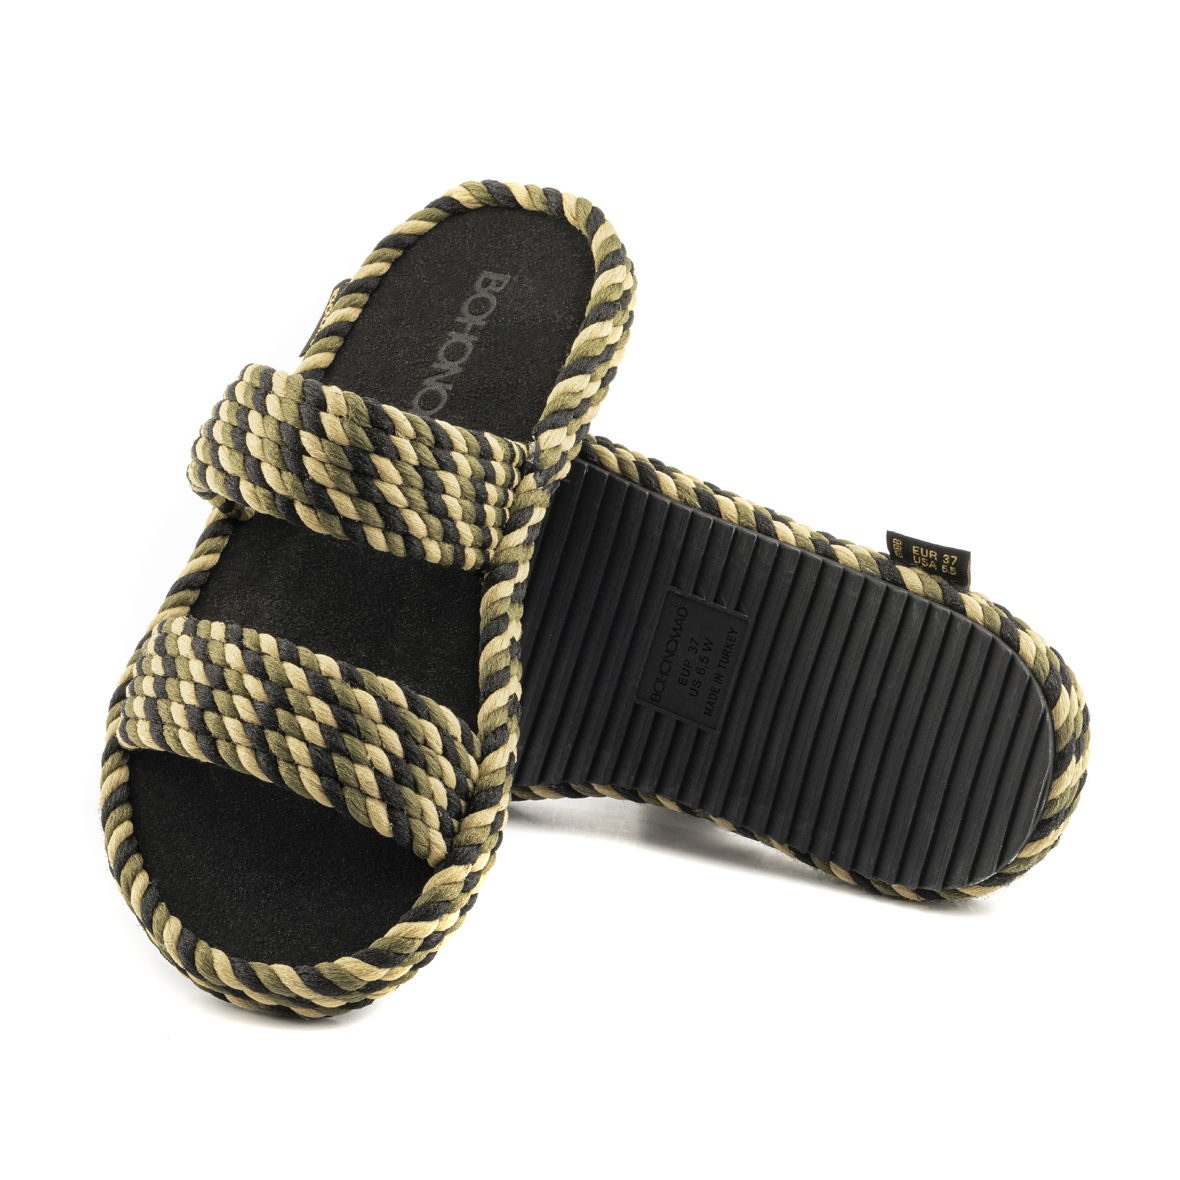 Tokyo Women Memory Foam Rope Slipper – Tricolor ( Khaki/Beige/Black )